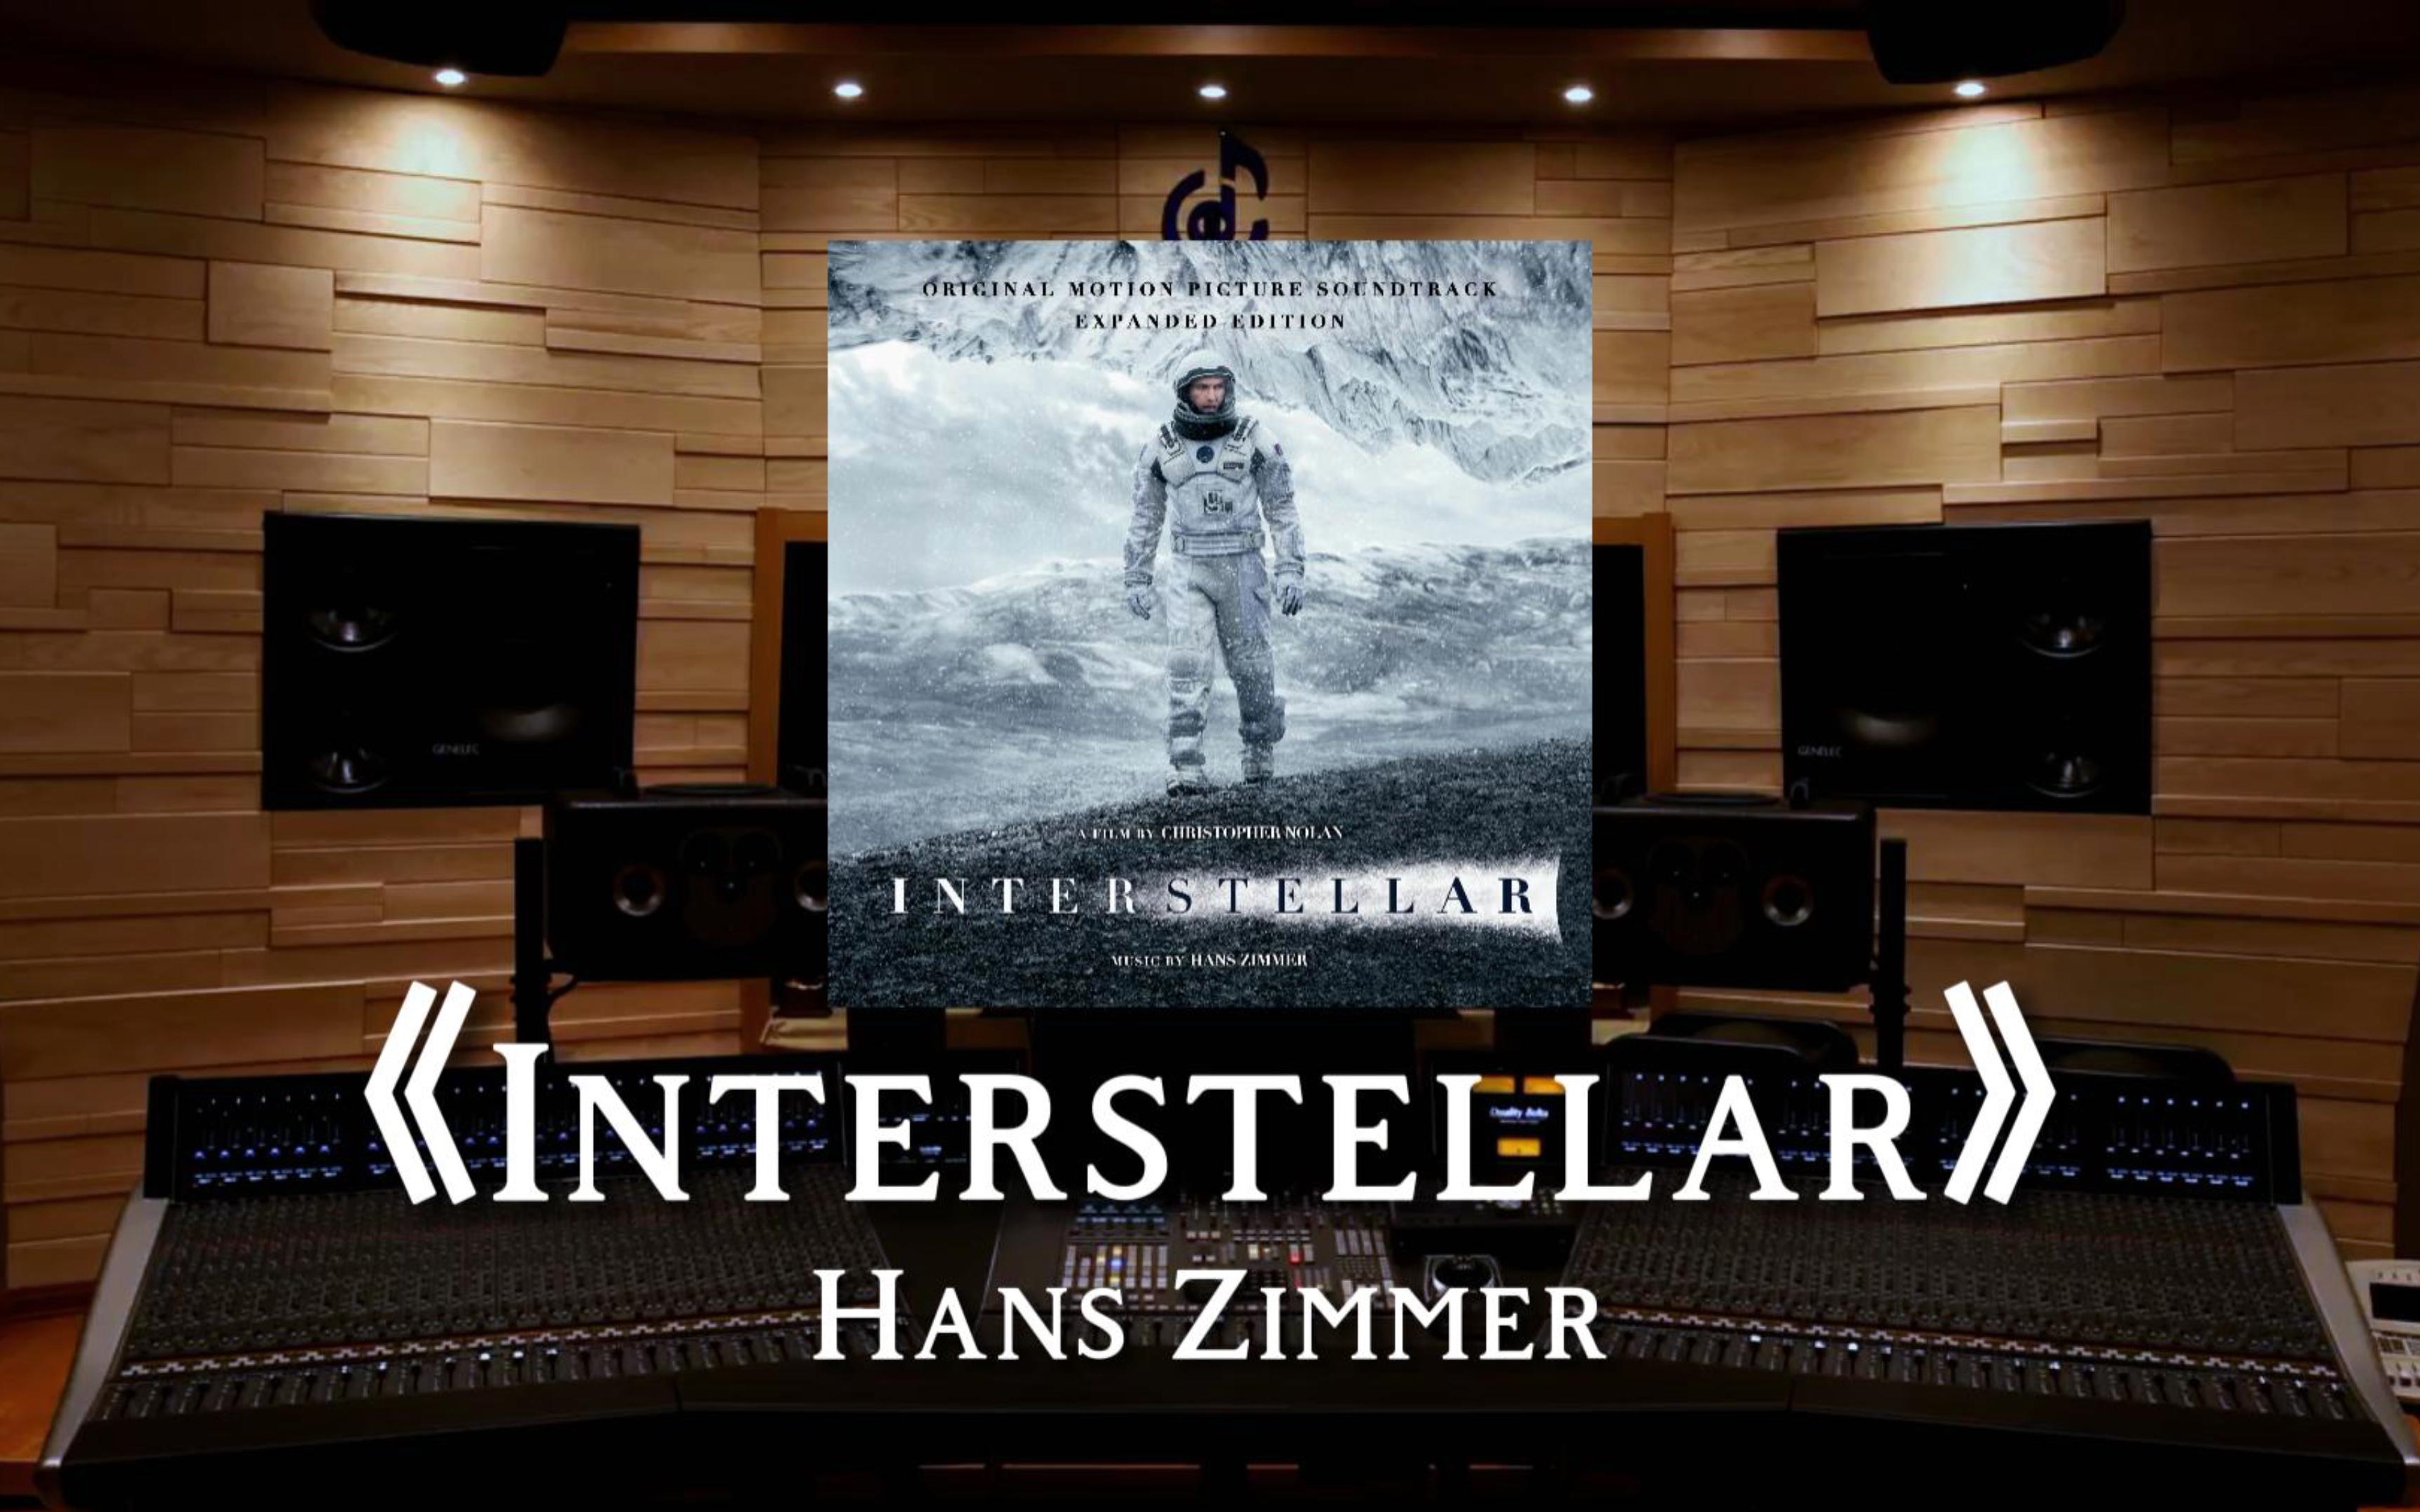 【星际穿越】耳机是我的宇宙飞船 | 百万级录音棚听汉斯季默《interstellar》星际穿越原声大碟OST（节选）【Hi-Res】